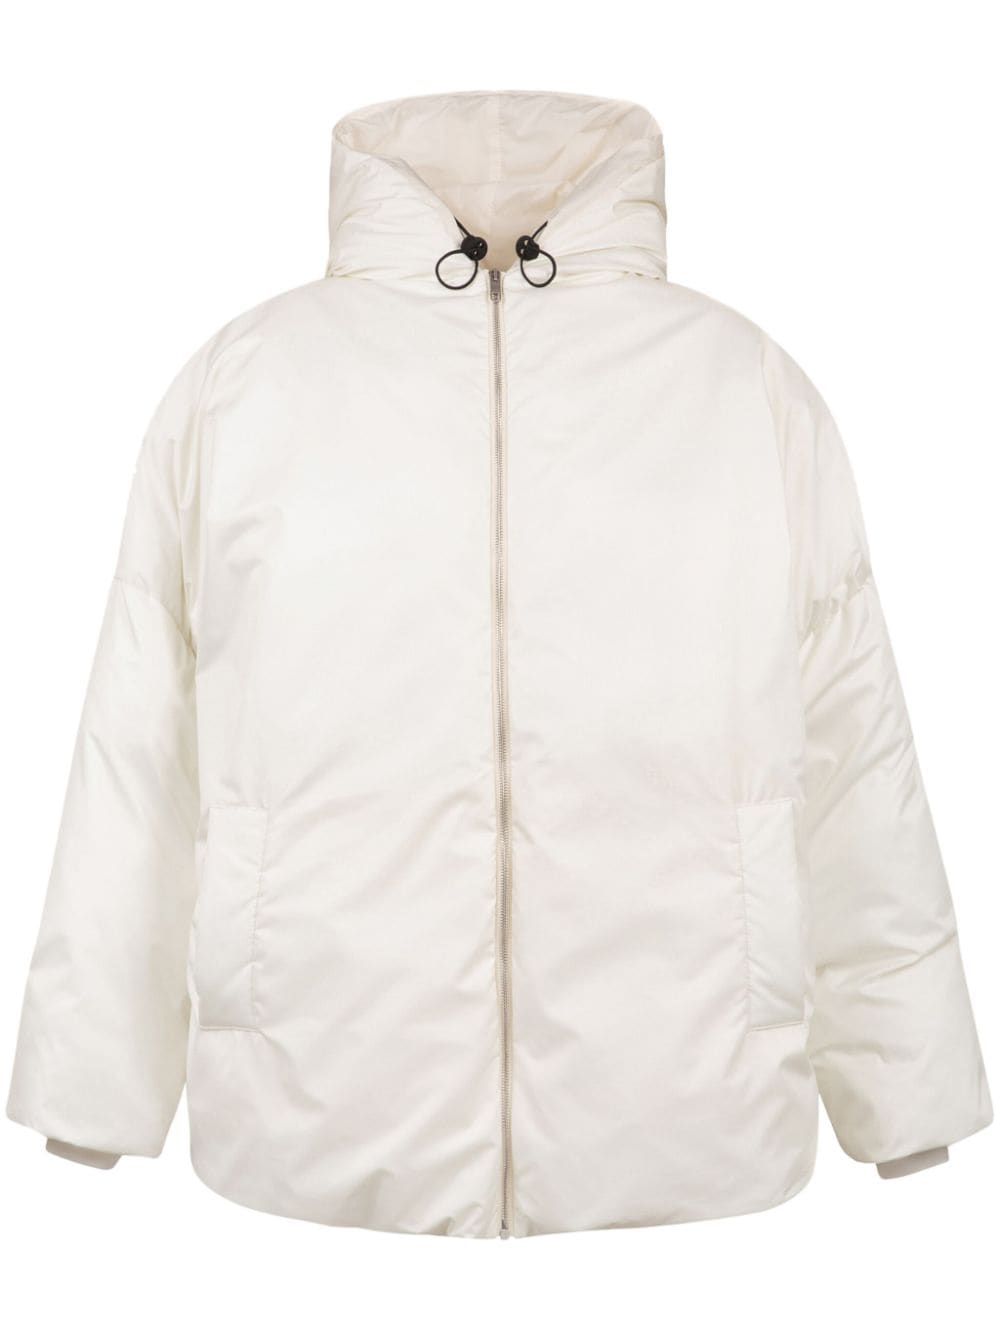 Bally hooded zip-up jacket - White von Bally